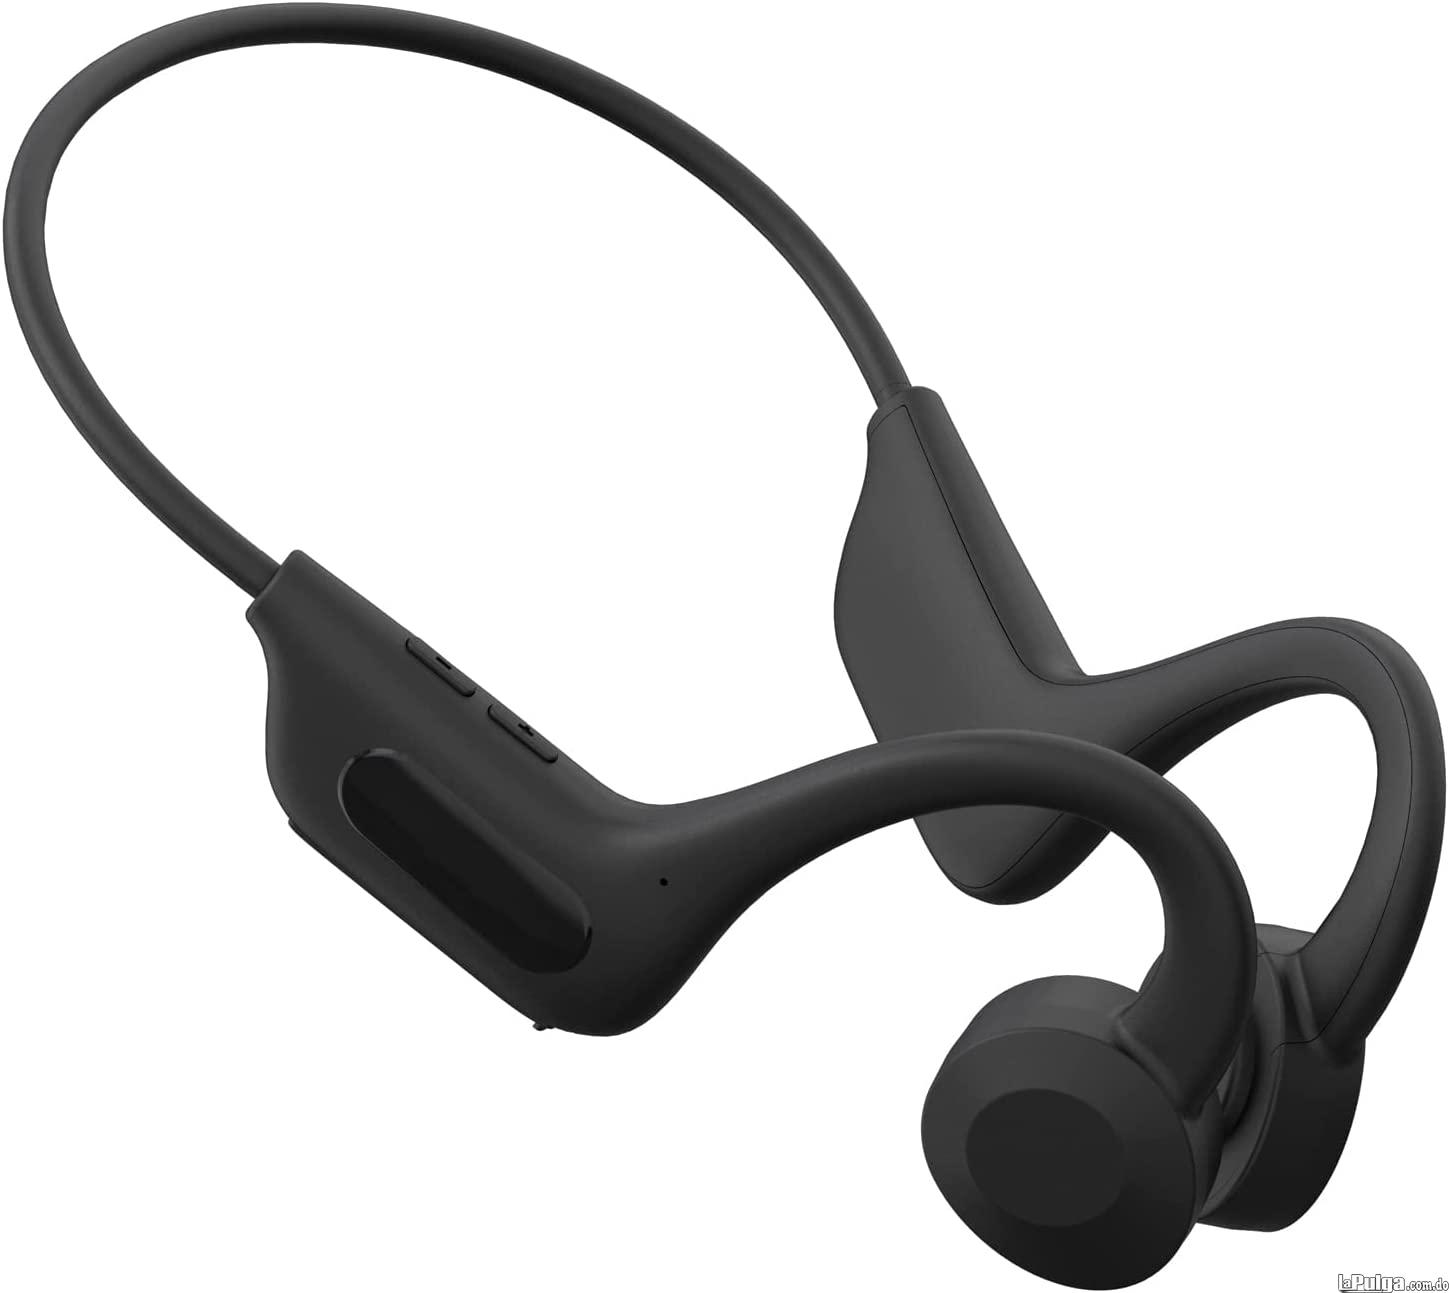 Auriculares de oído abierto inalámbricos Bluetooth audifonos condu Foto 7139842-2.jpg